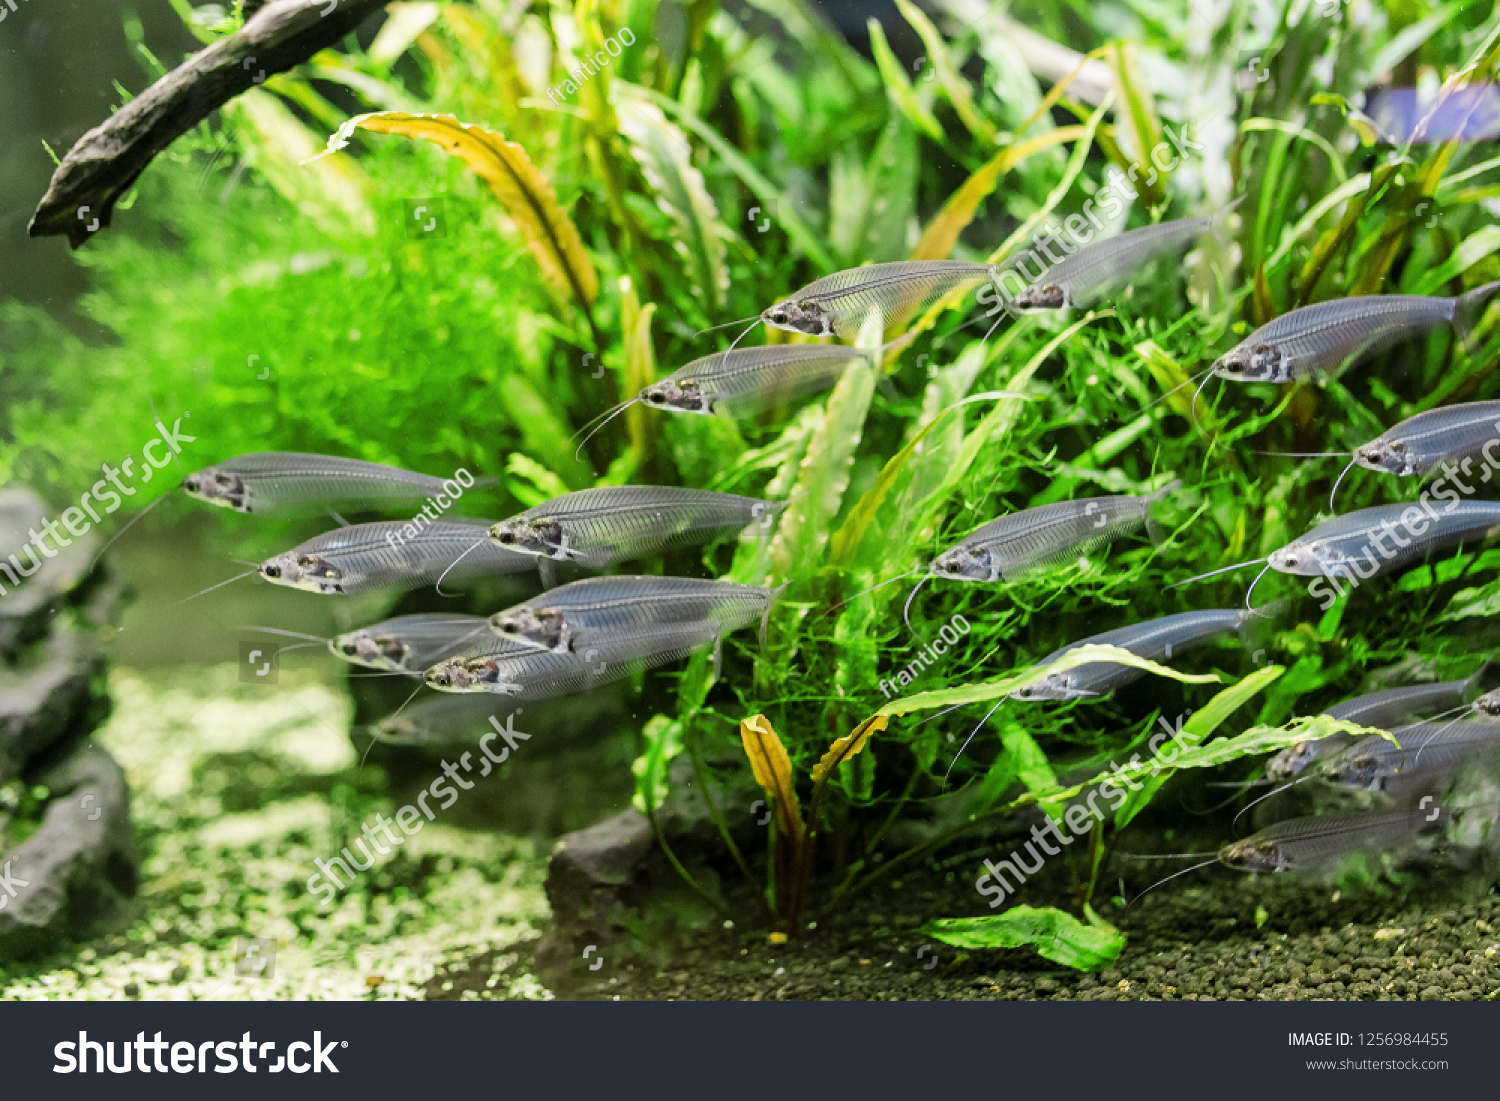 Unusual Glass catfish or ryptopterus vitreolus in aquarium #1256984455